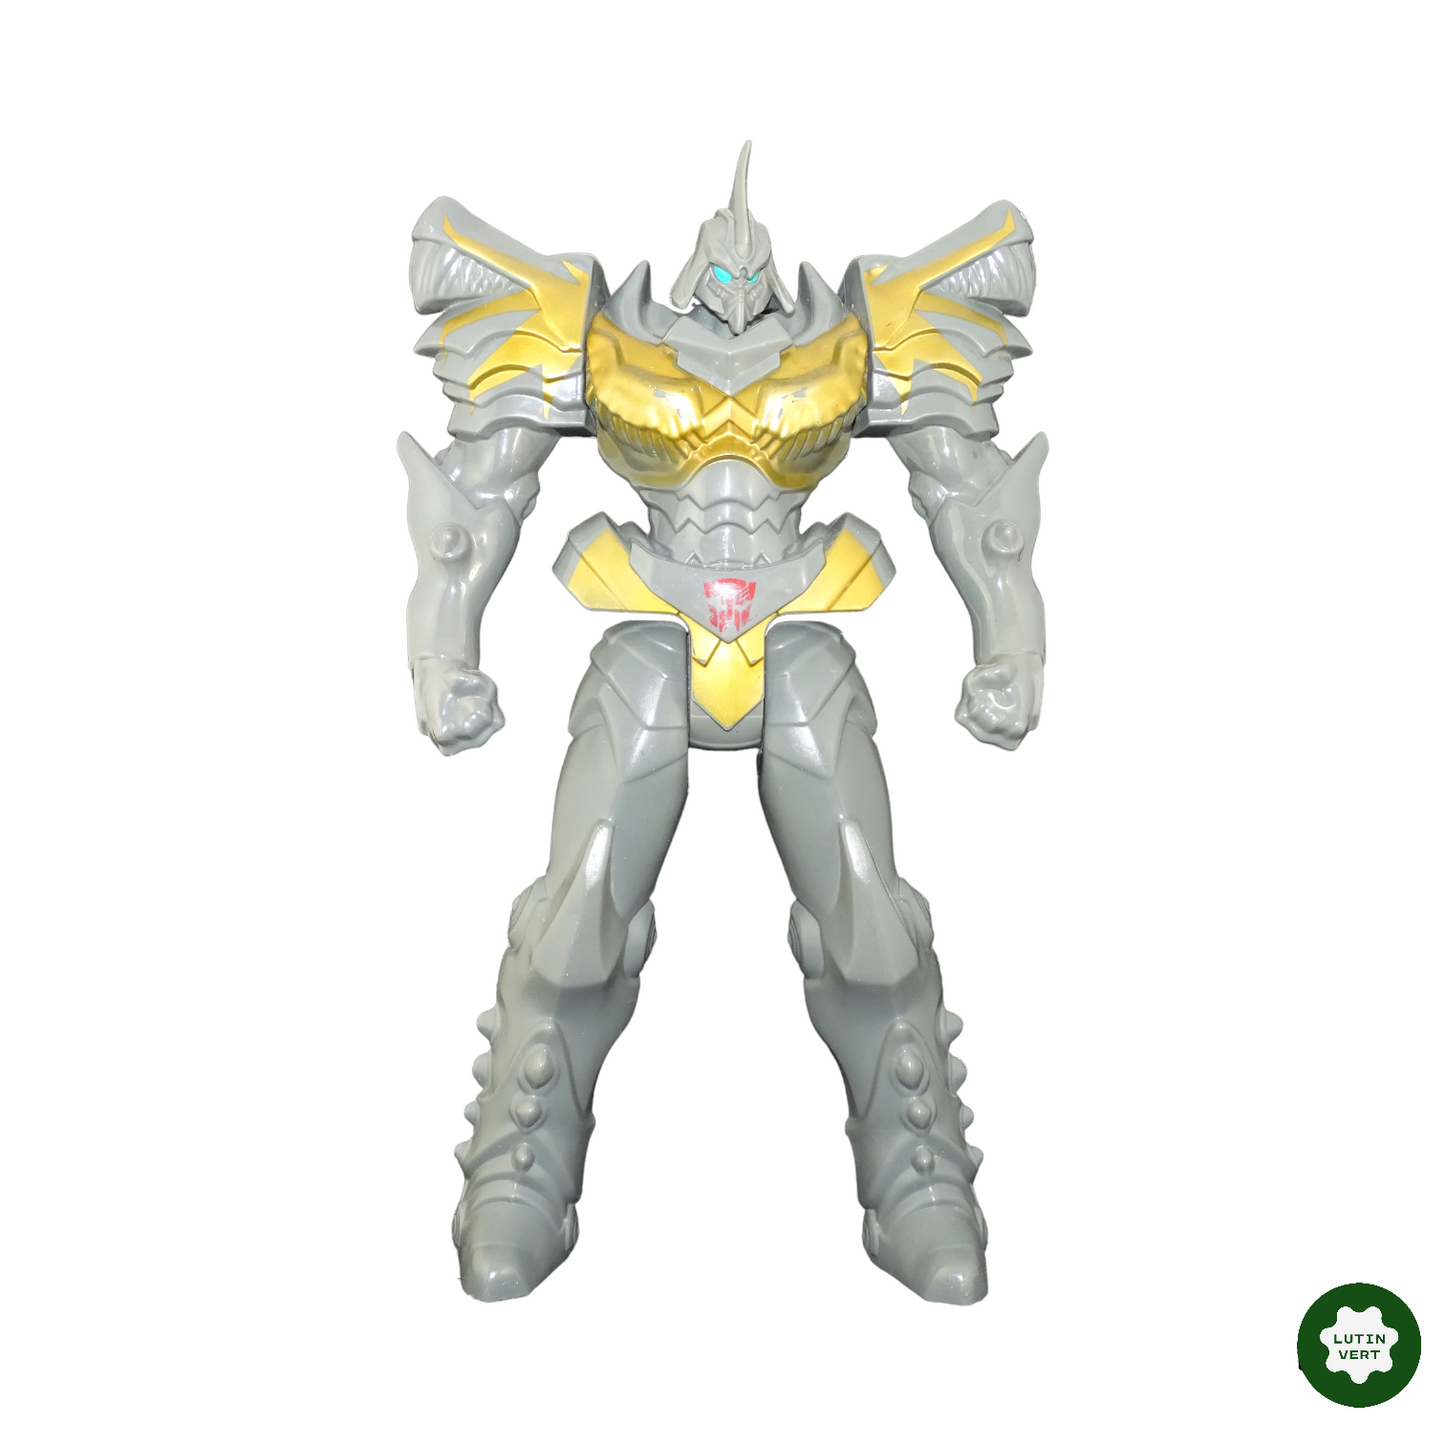 Gardien titan Grimlock (Transformers 4) d'occasion - Hasbro - Lutin Vert